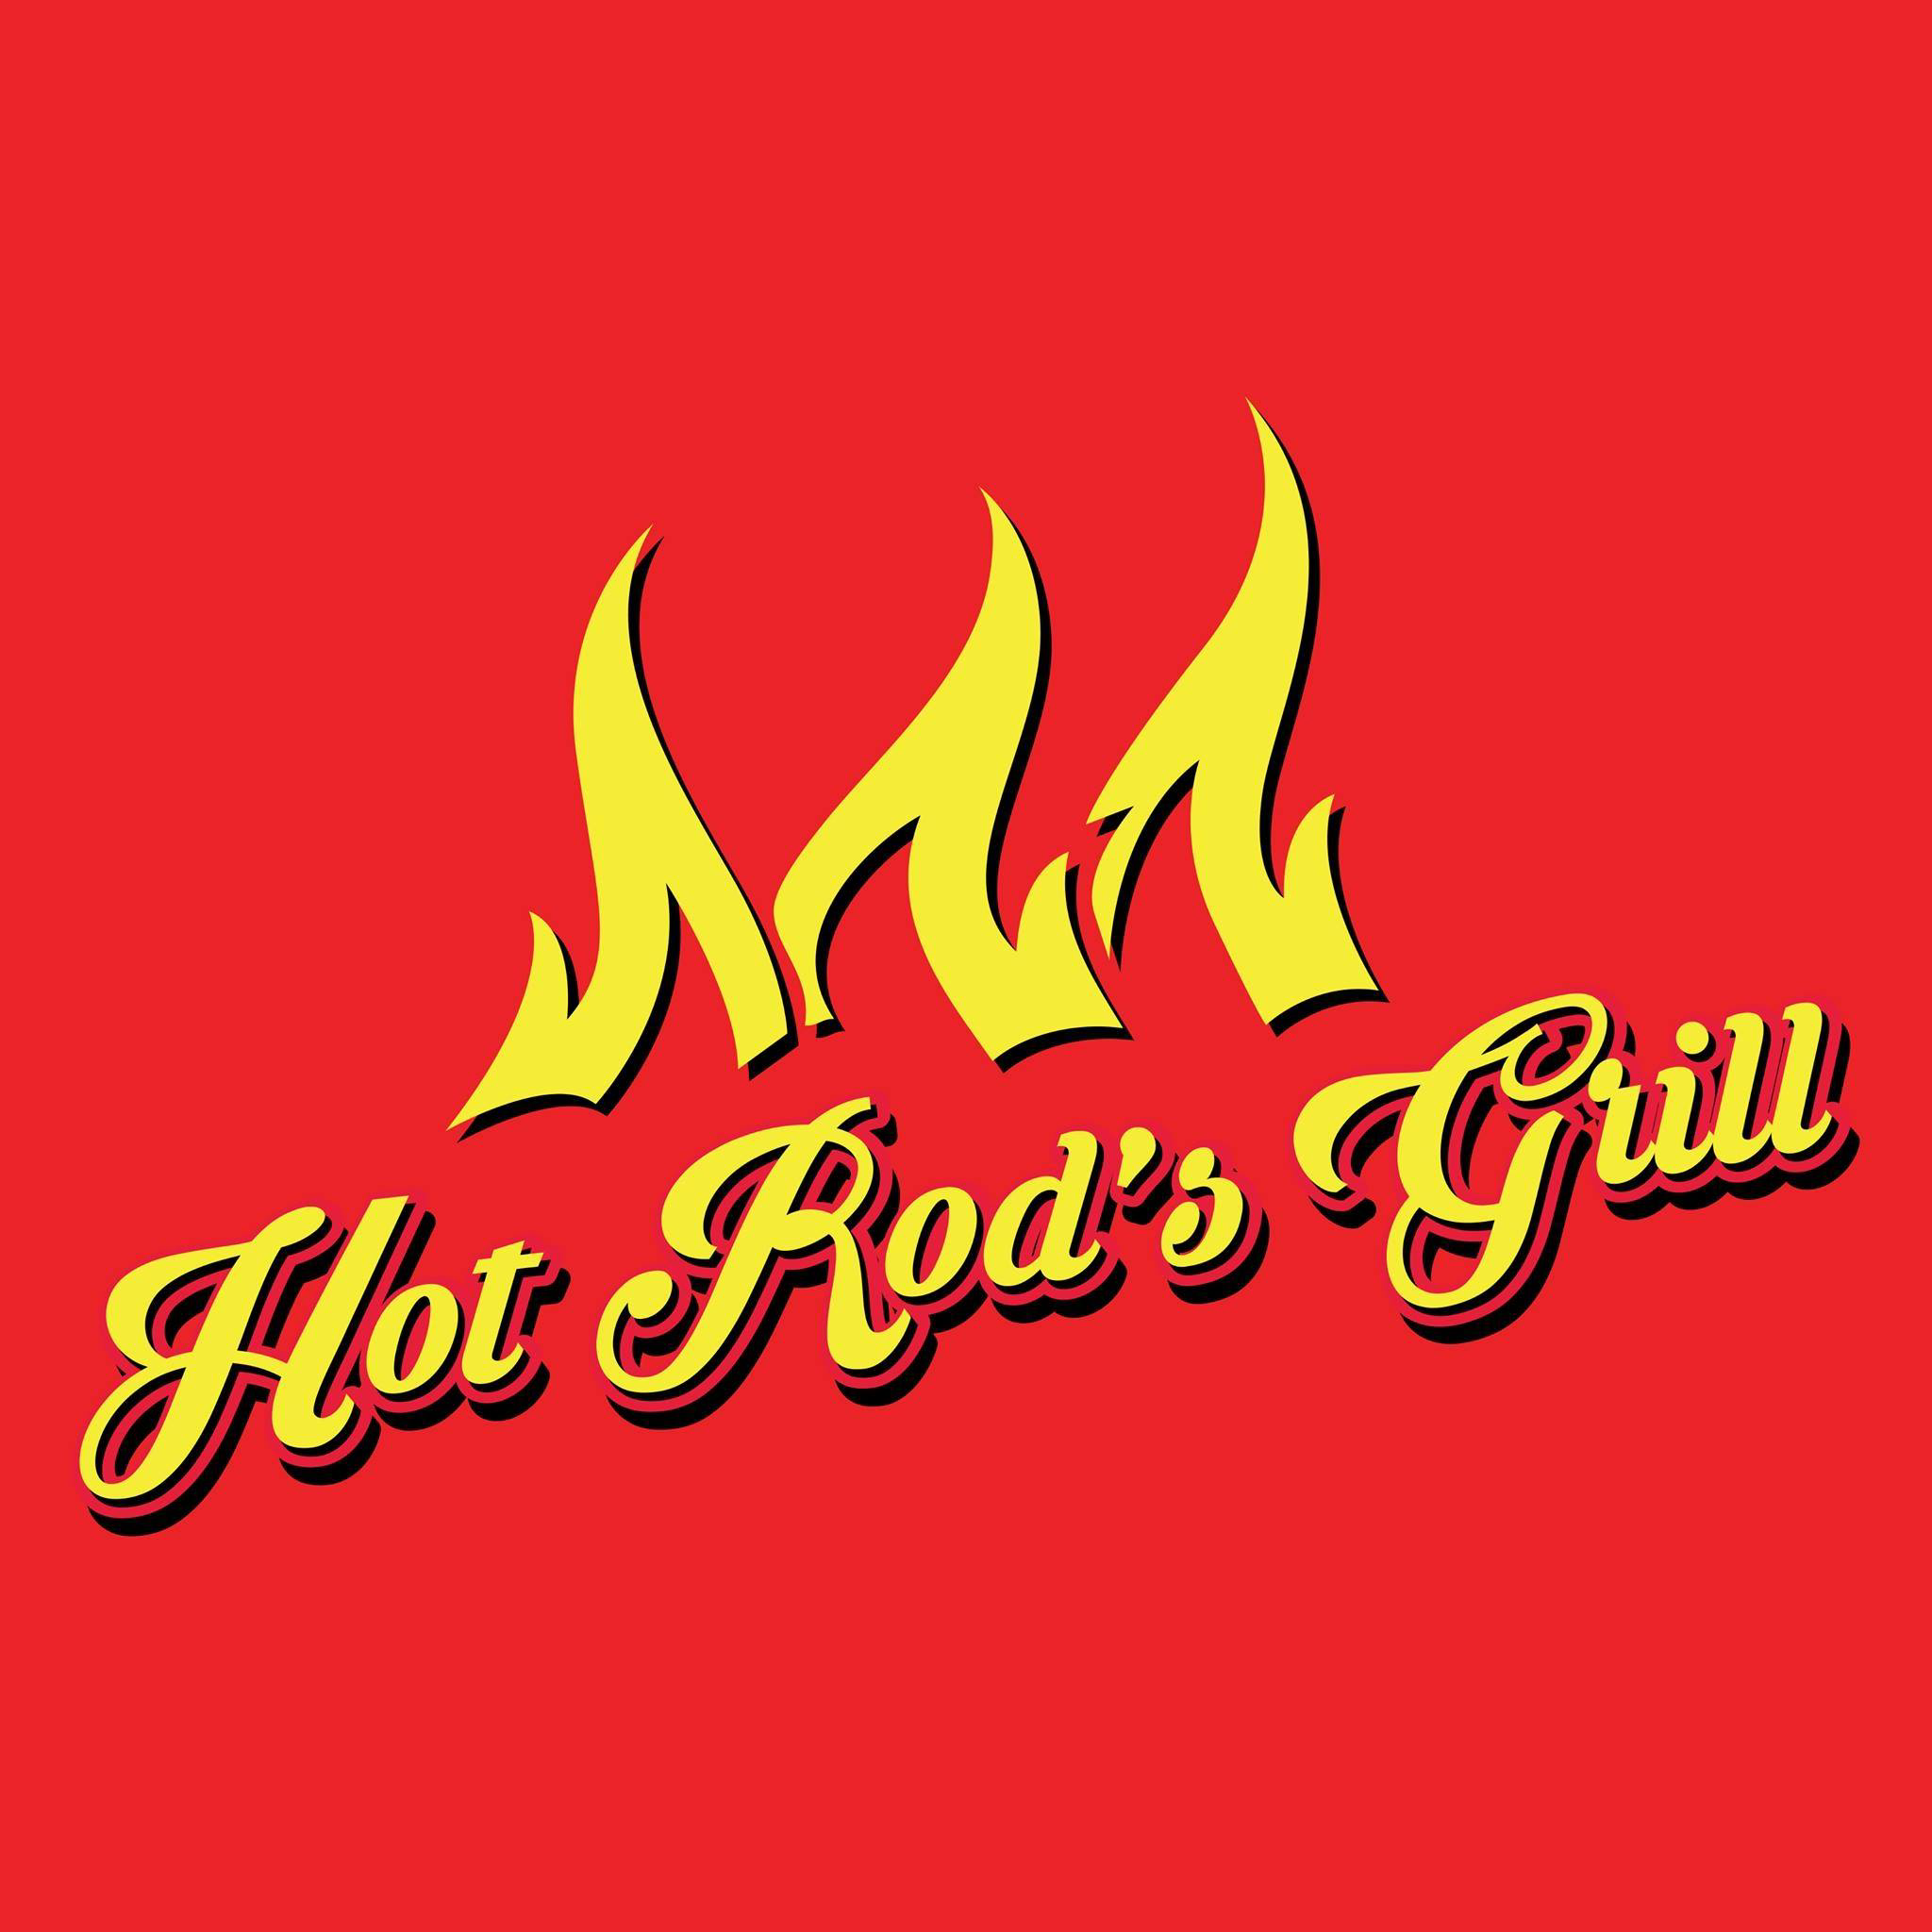 Hot Rod's Grill.jpg